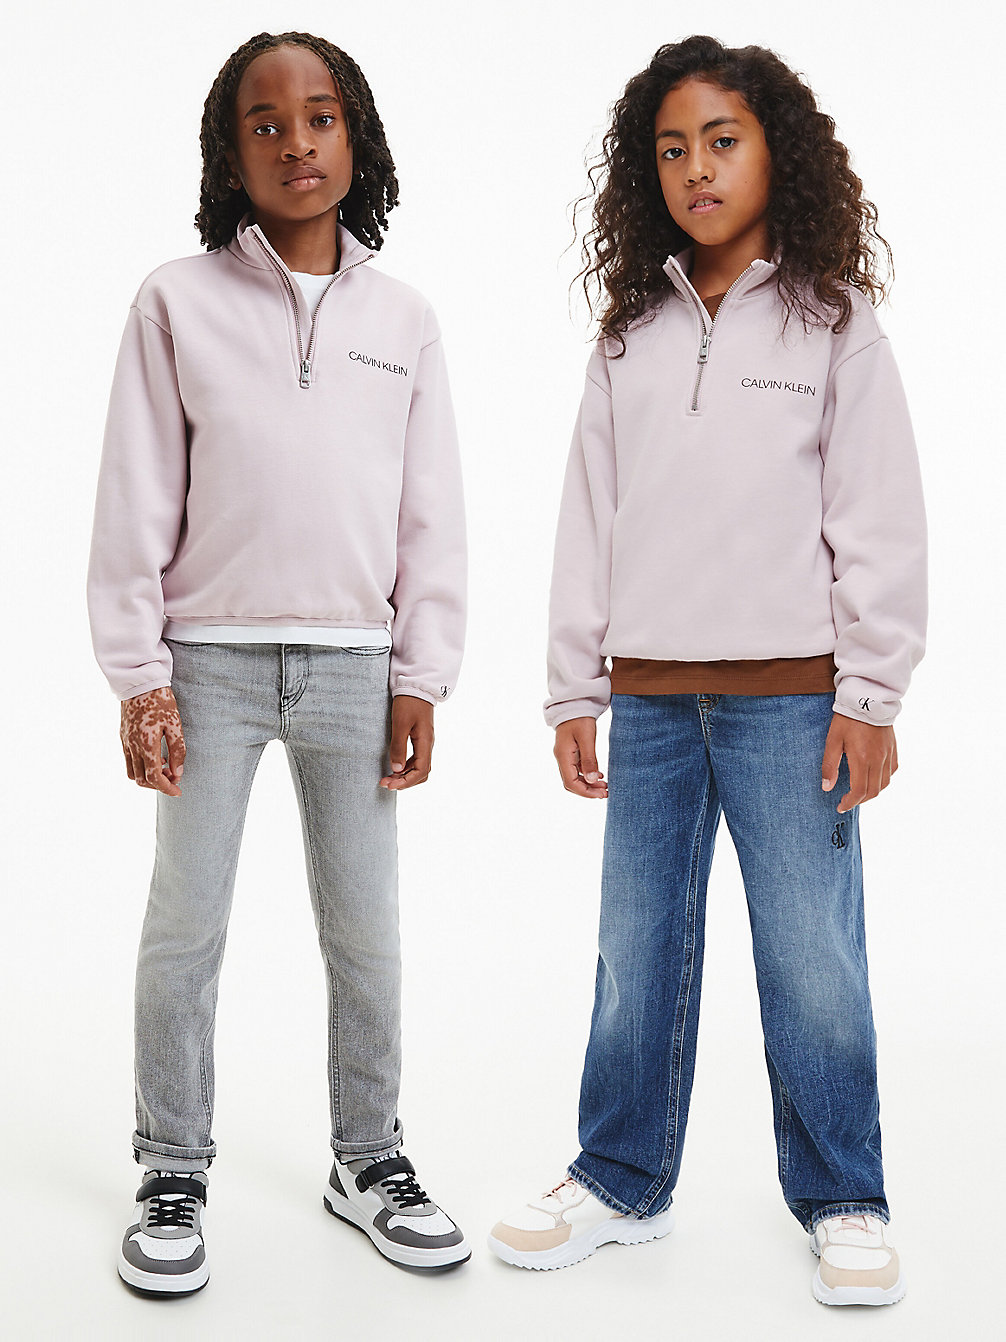 HAWAII ORCHID Unisex Relaxed Zip Neck Sweatshirt undefined kids unisex Calvin Klein